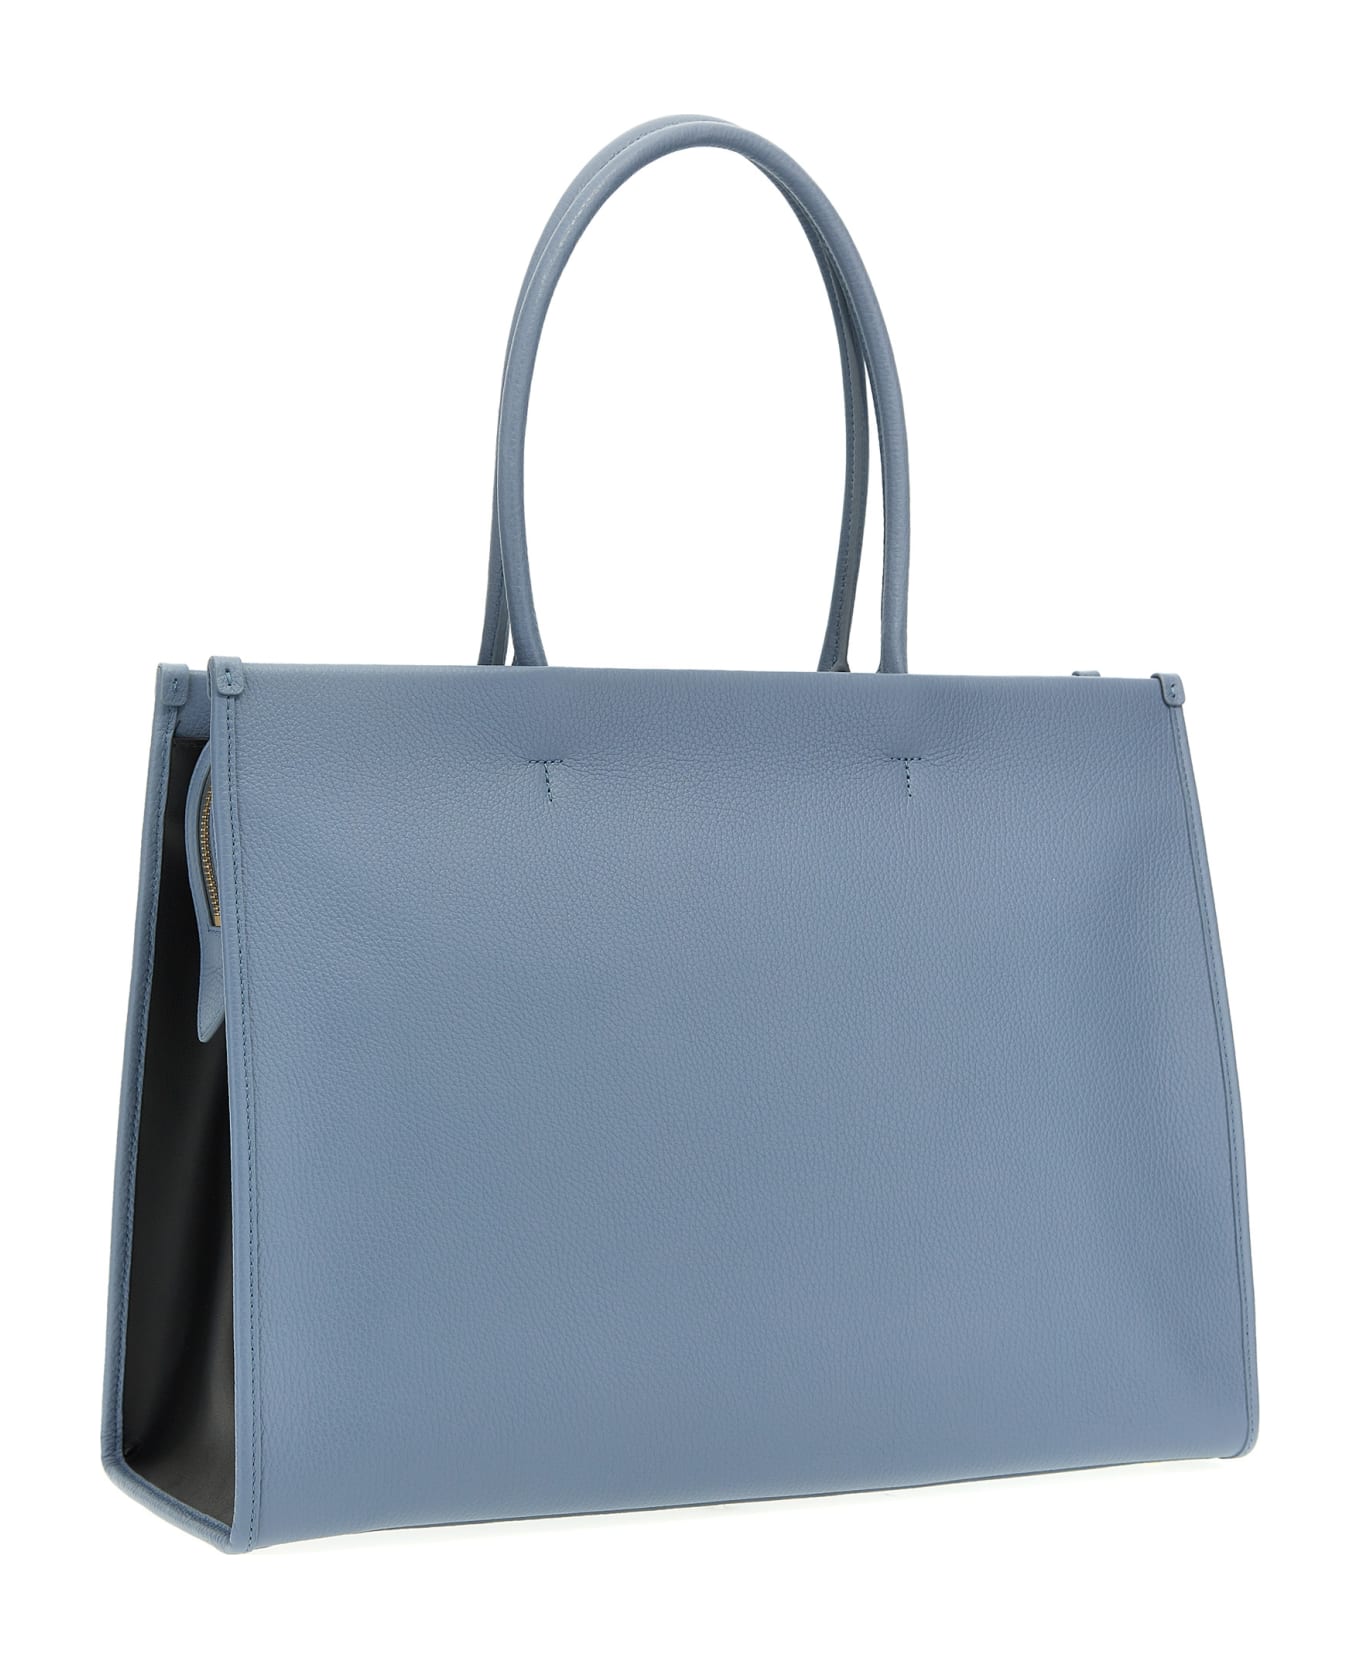 Furla 'opportunity L' Shopping Bag - Light Blue